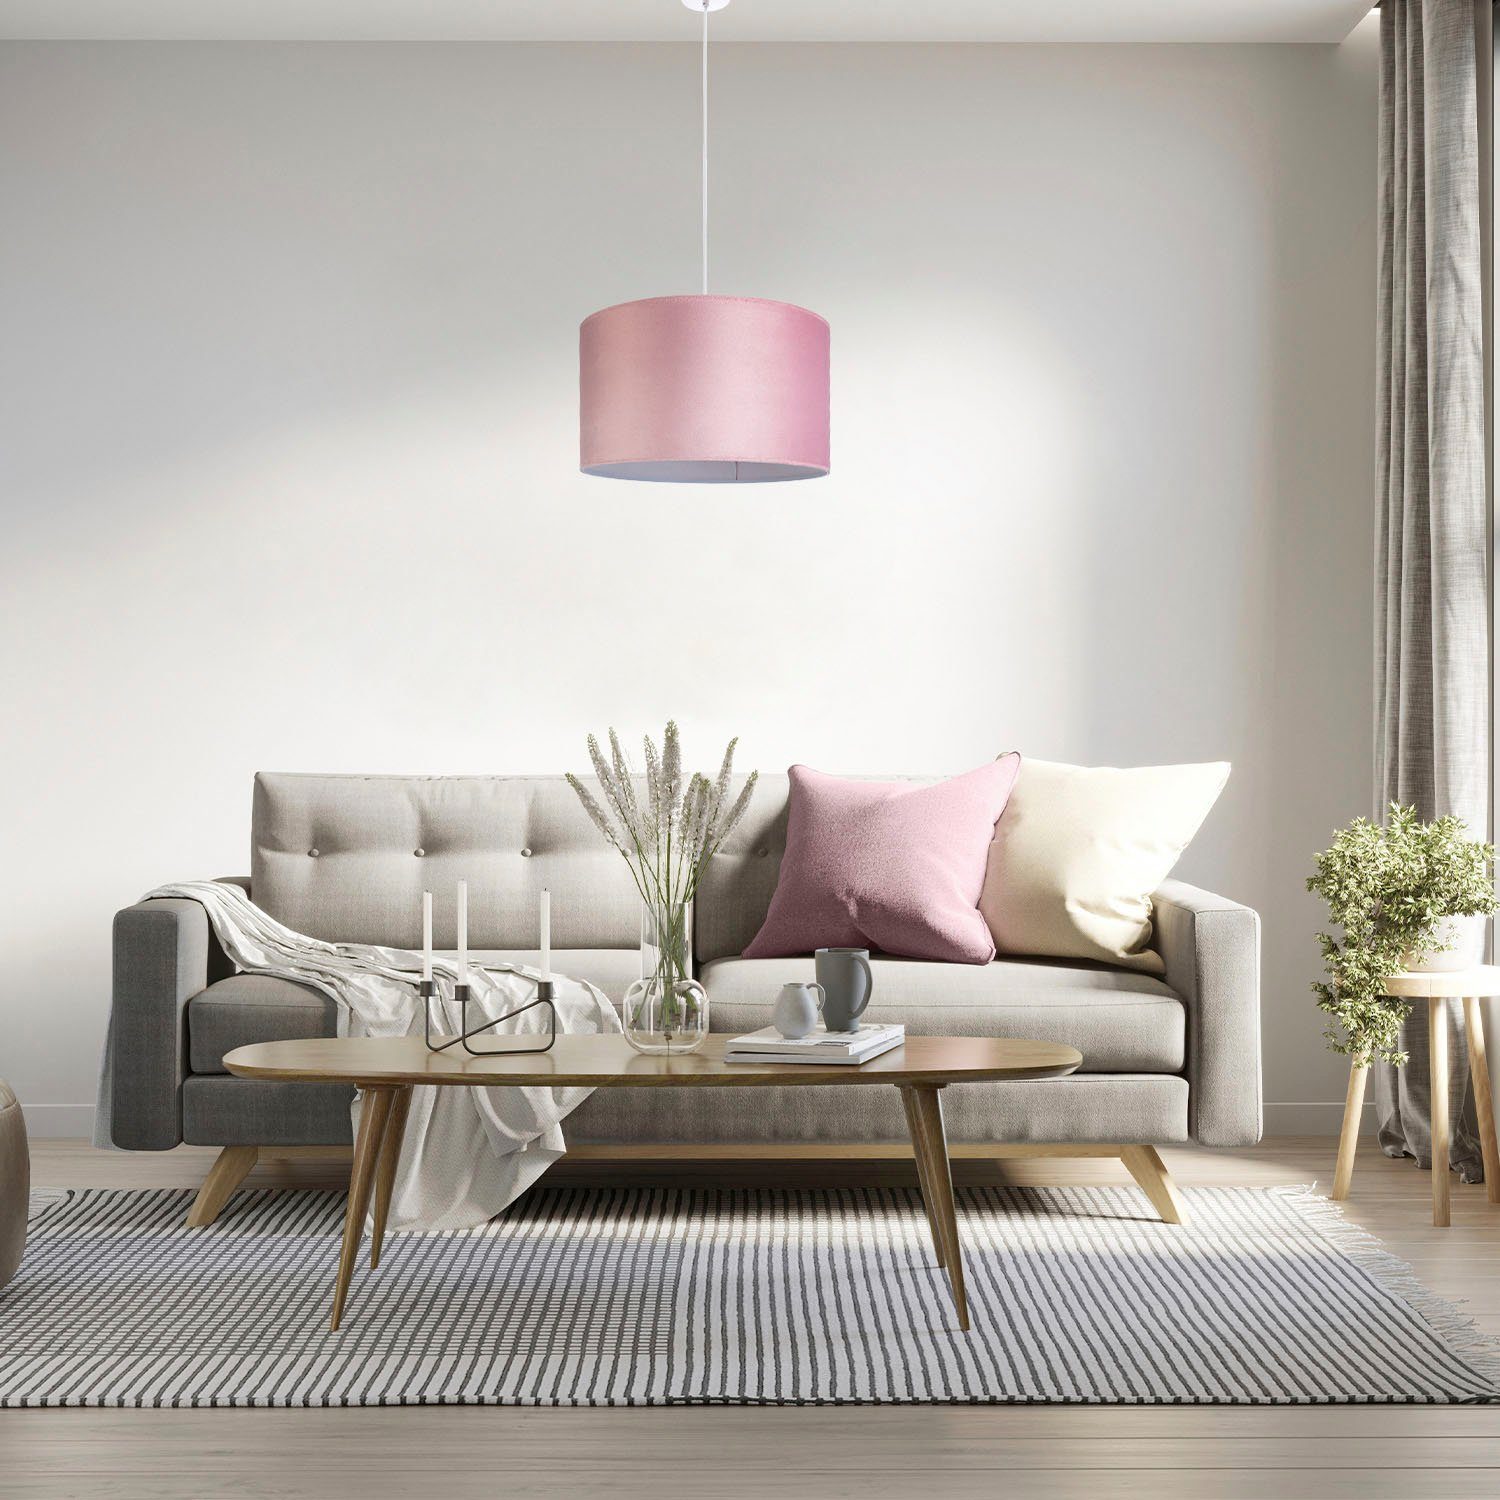 Wohnzimmer Color, Kabel Paco 1,5m Home aus Deko Hugo E27 Velour uni Leuchtmittel, Lampenschirm Unifarben ohne Pendelleuchte pink